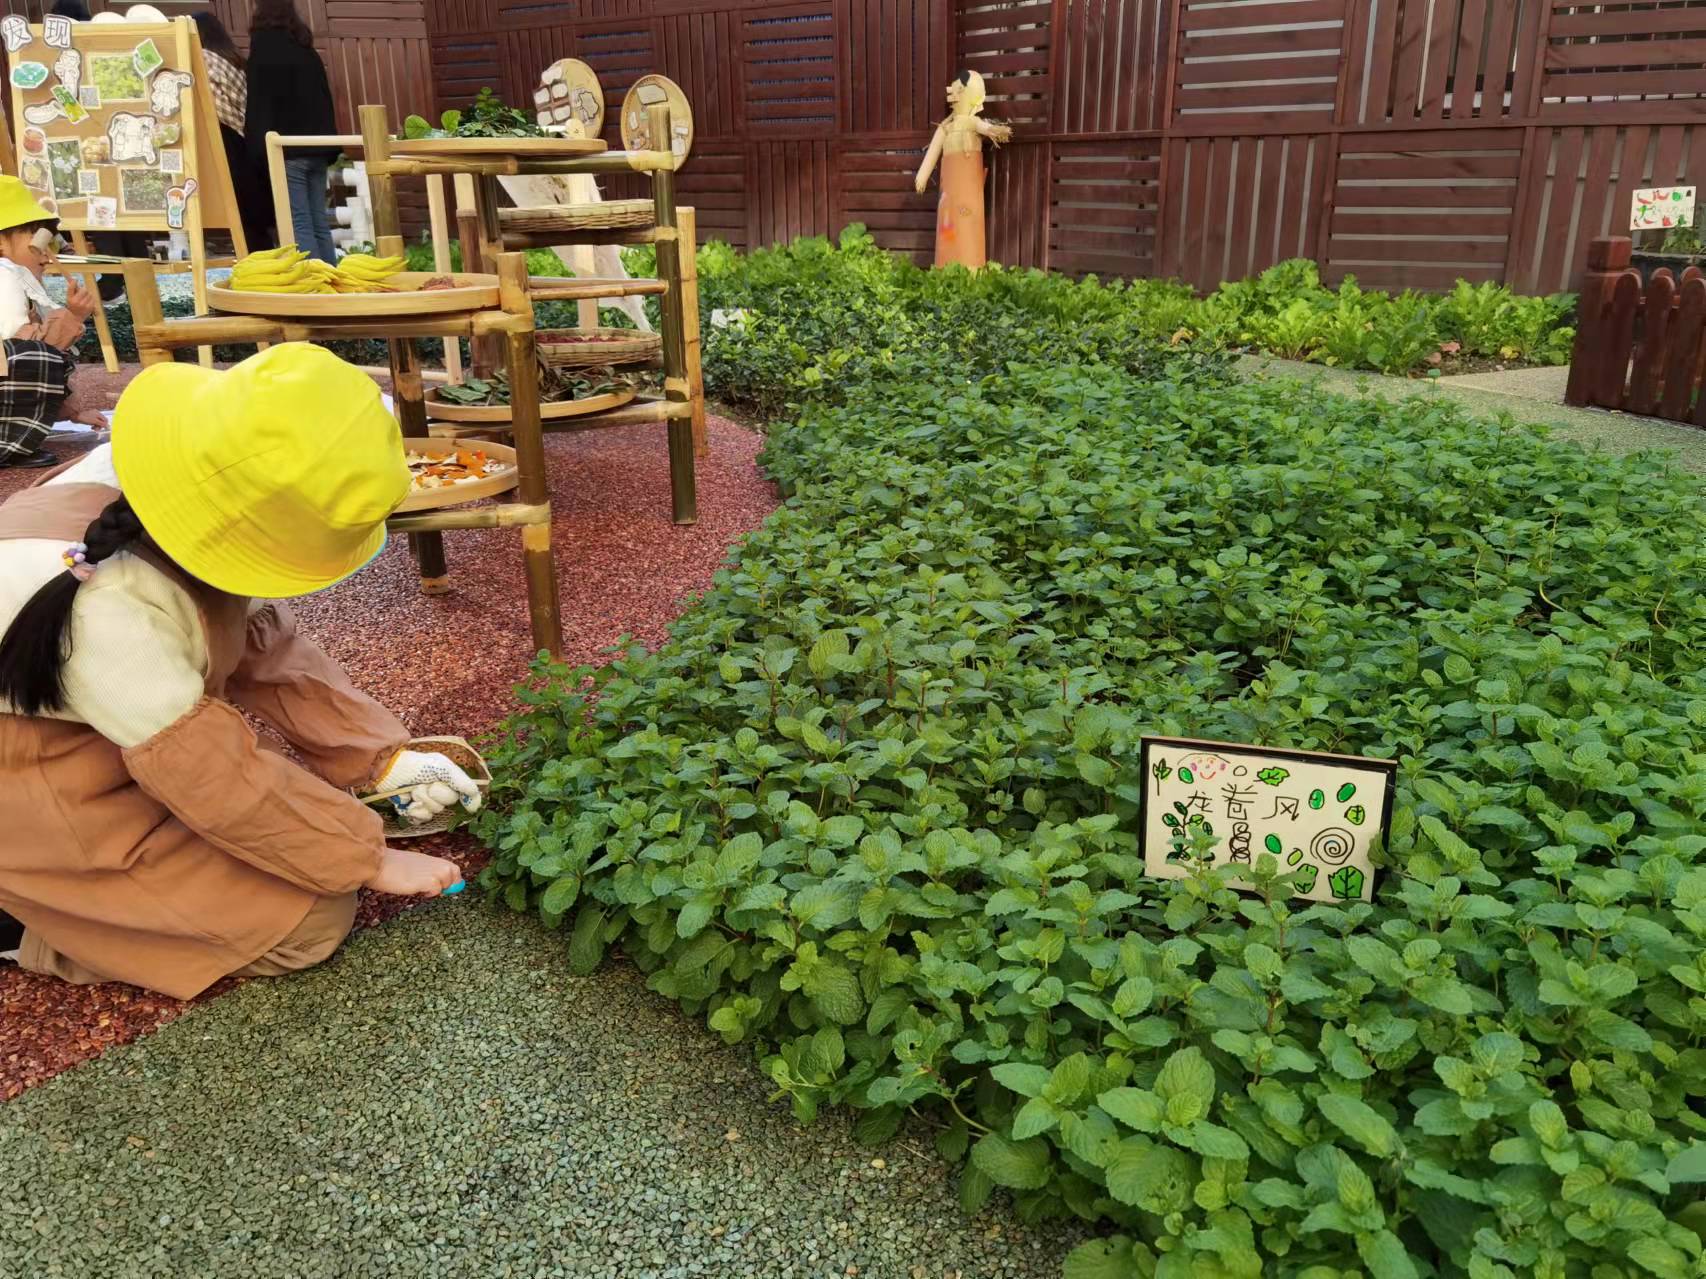 上海市实验幼儿园一楼的健康种植园里，孩子们给薄荷起名“龙卷风”。 本文图片均为 澎湃新闻记者 韩晓蓉 图